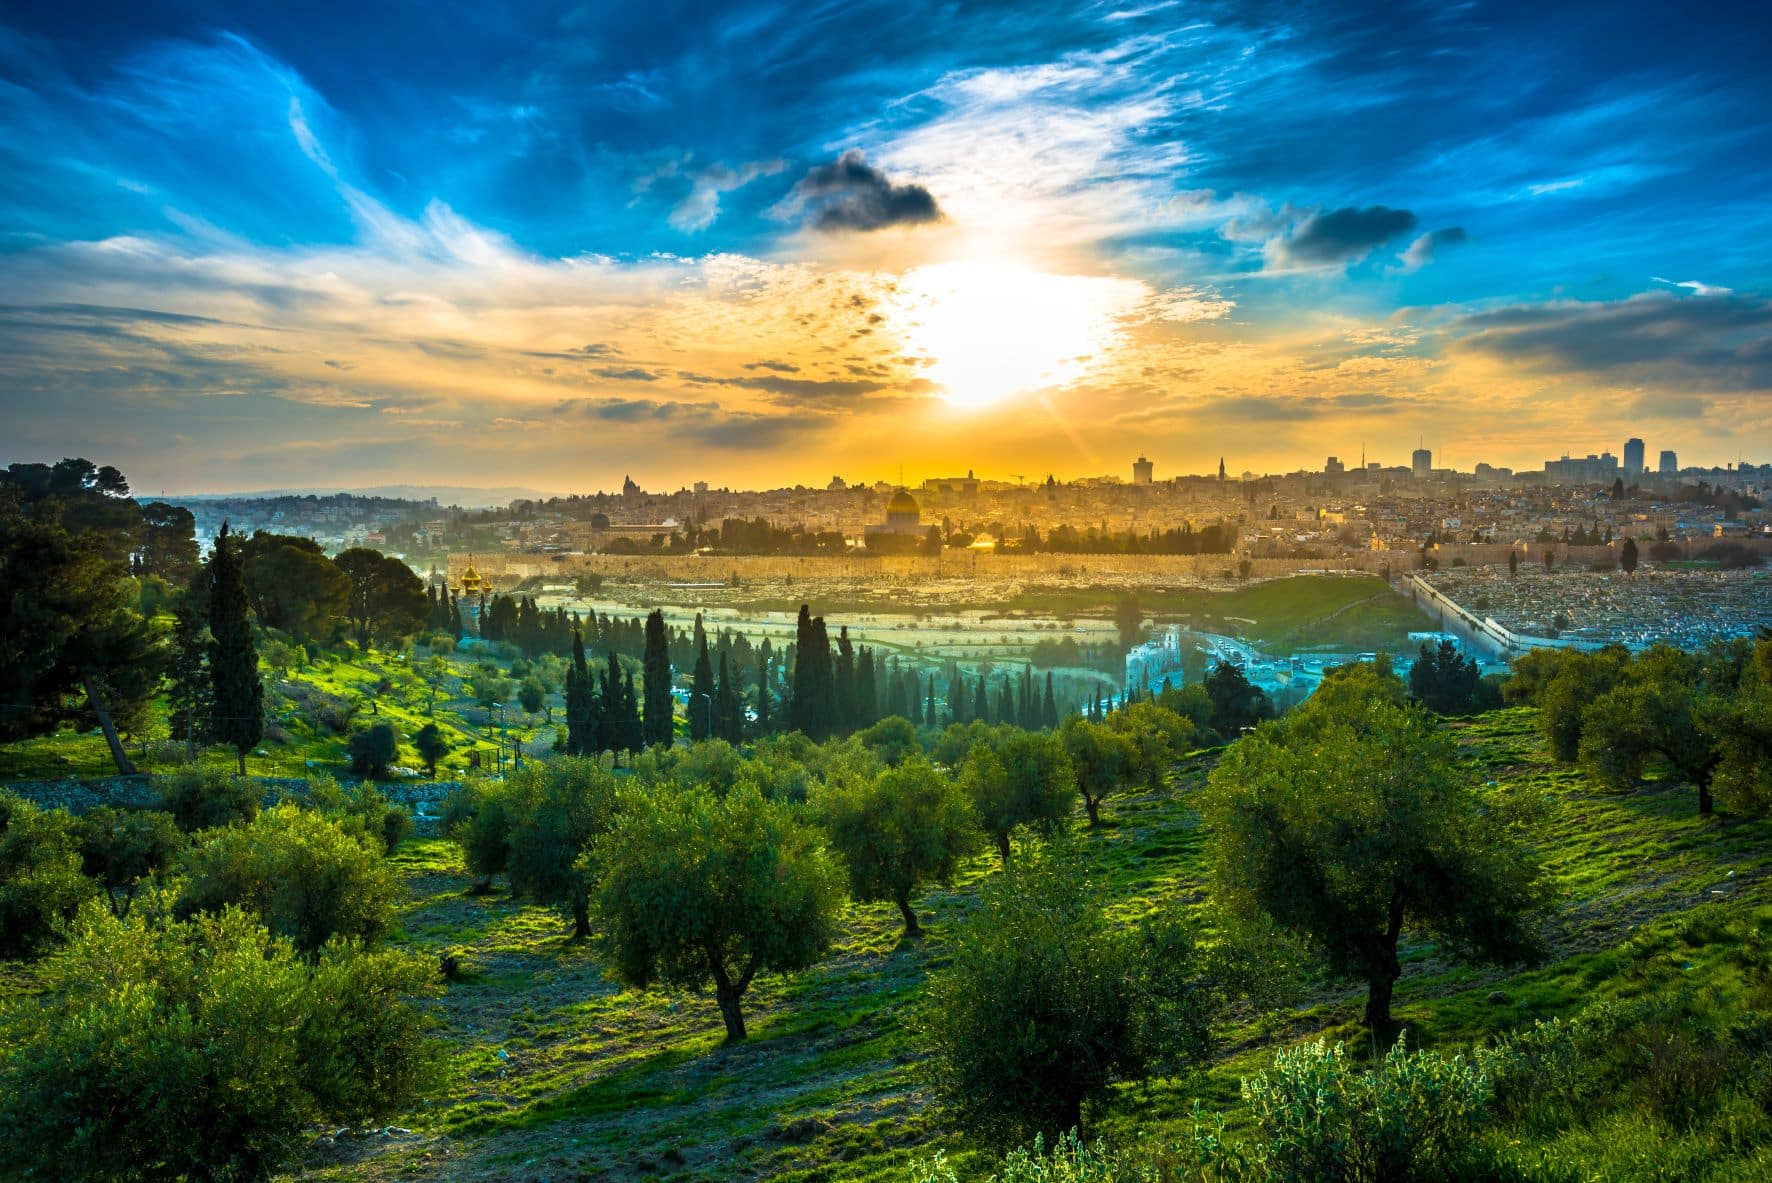 Aussicht auf die Altstadt von Jerusalem vom Olivenberg mit Olivenbäumen